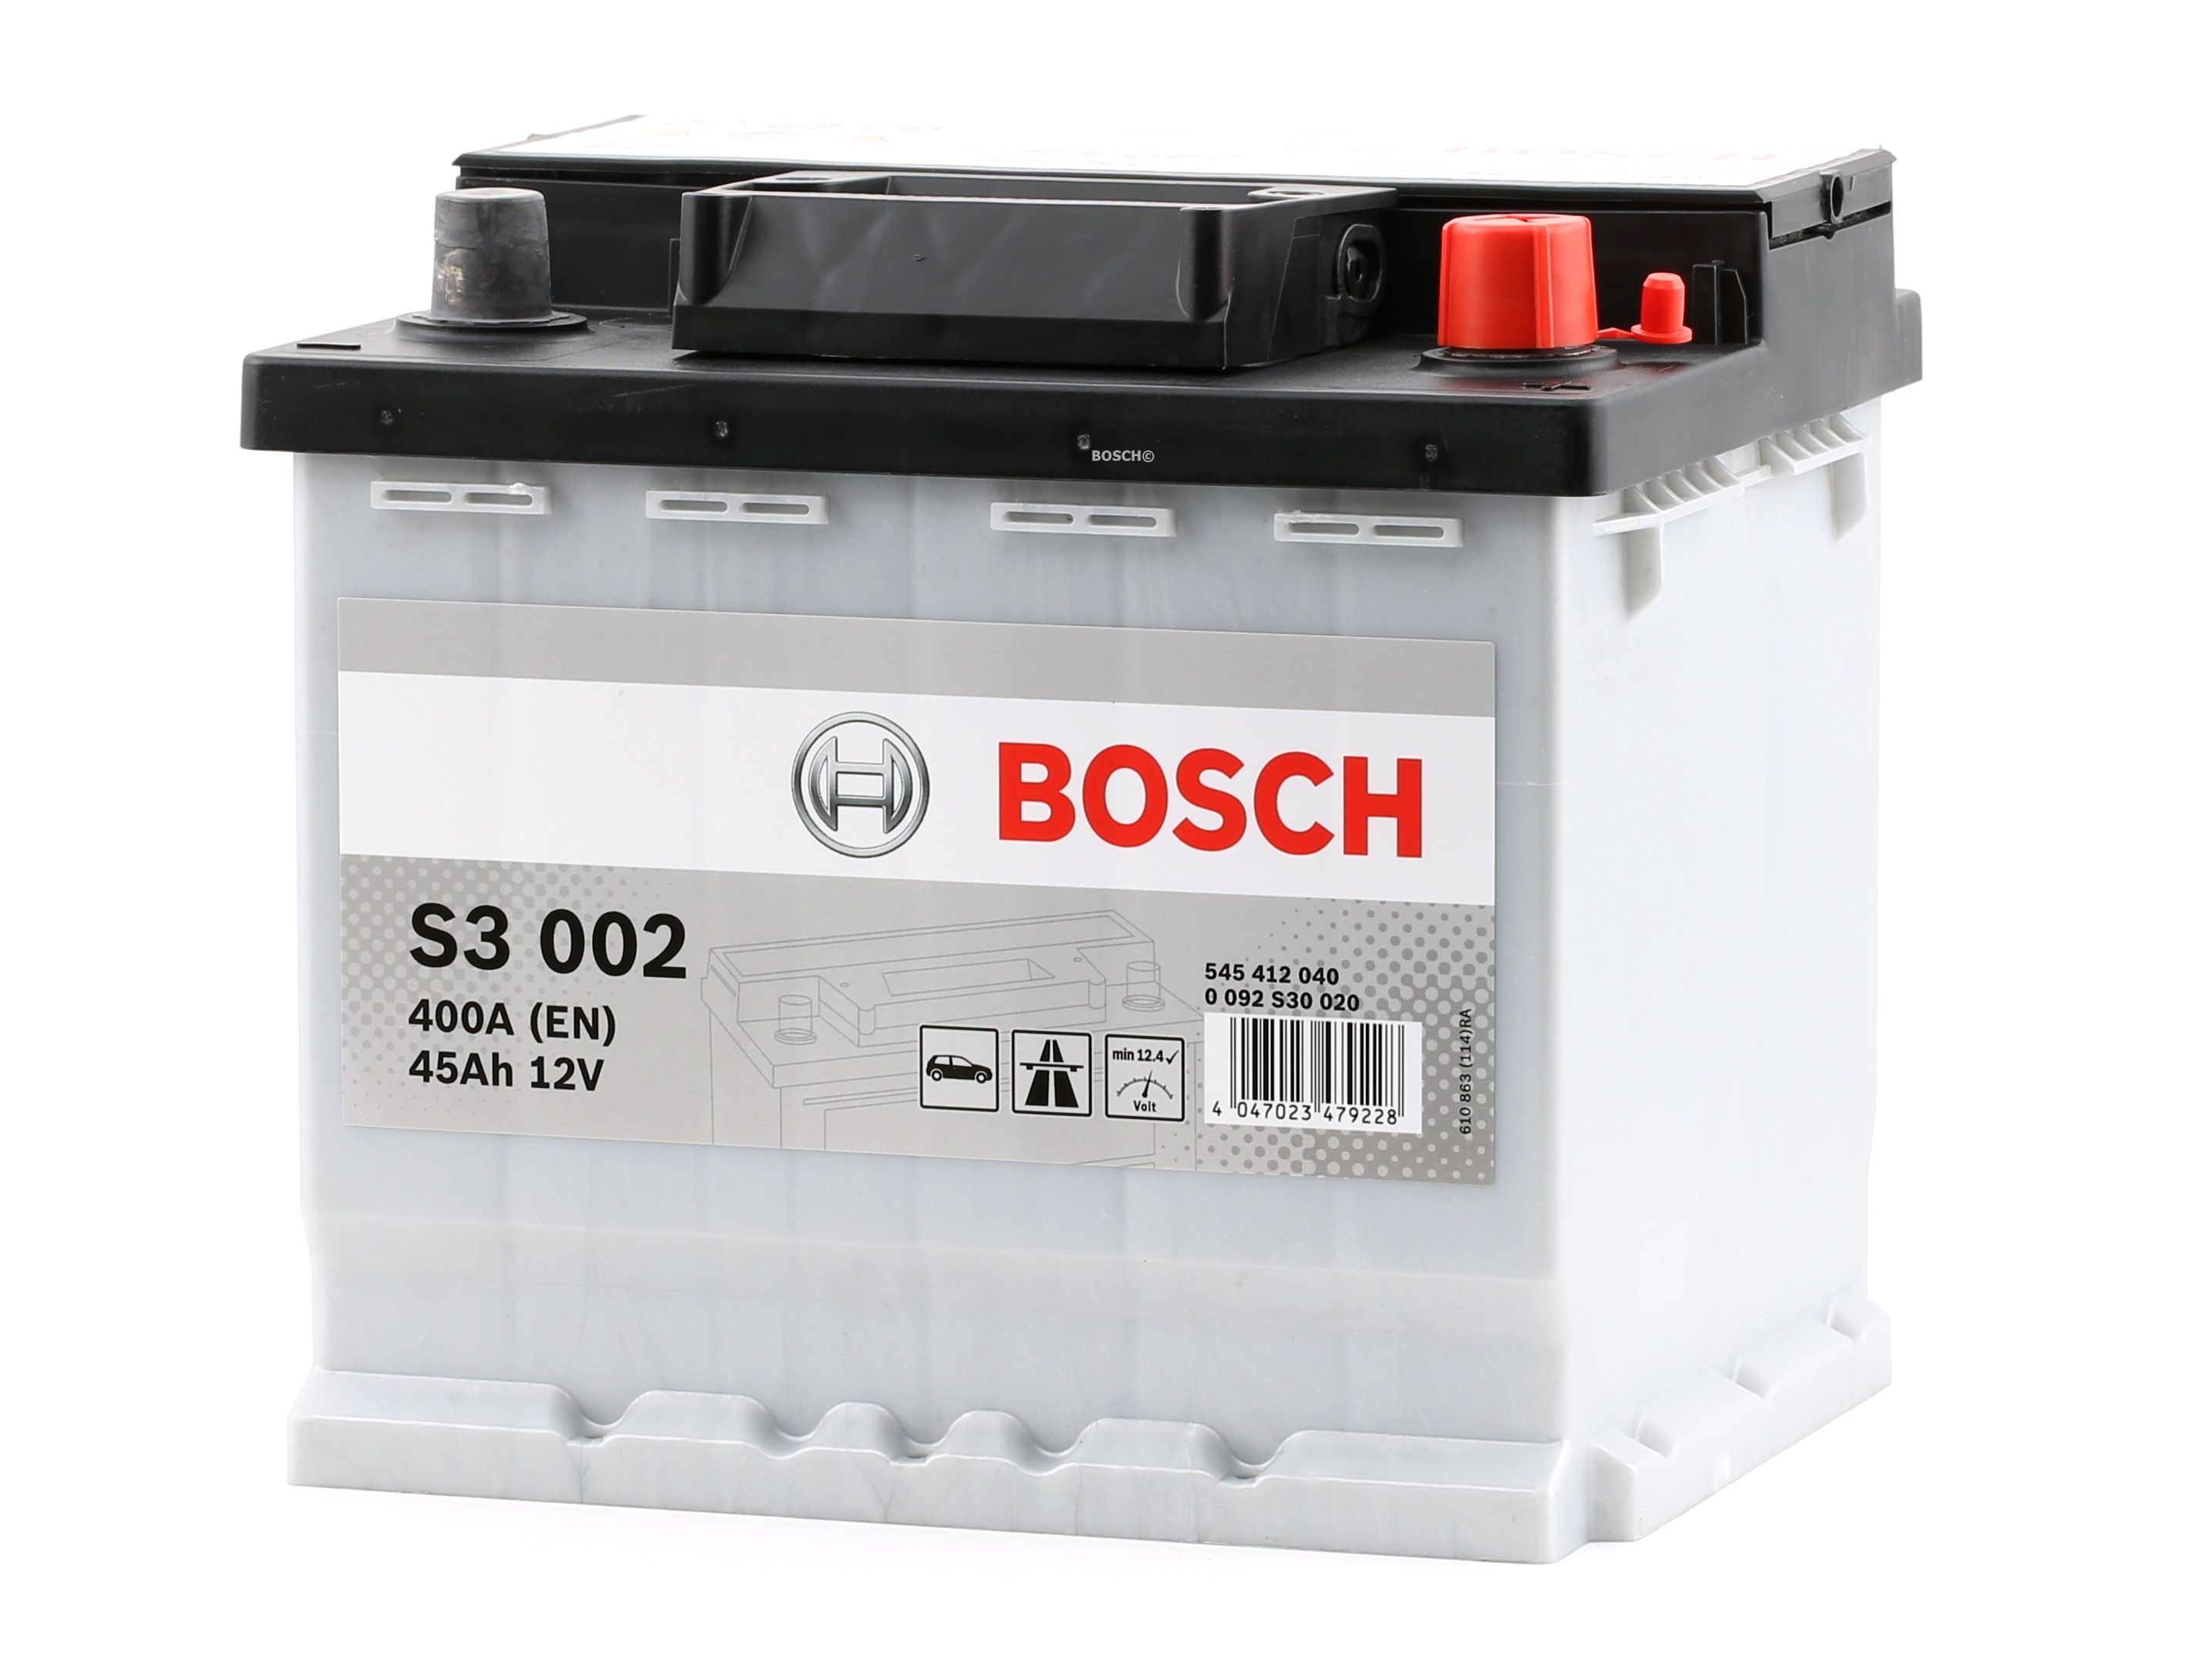 BOSCH Autobatterie Audi 0 092 S30 020 in Original Qualität